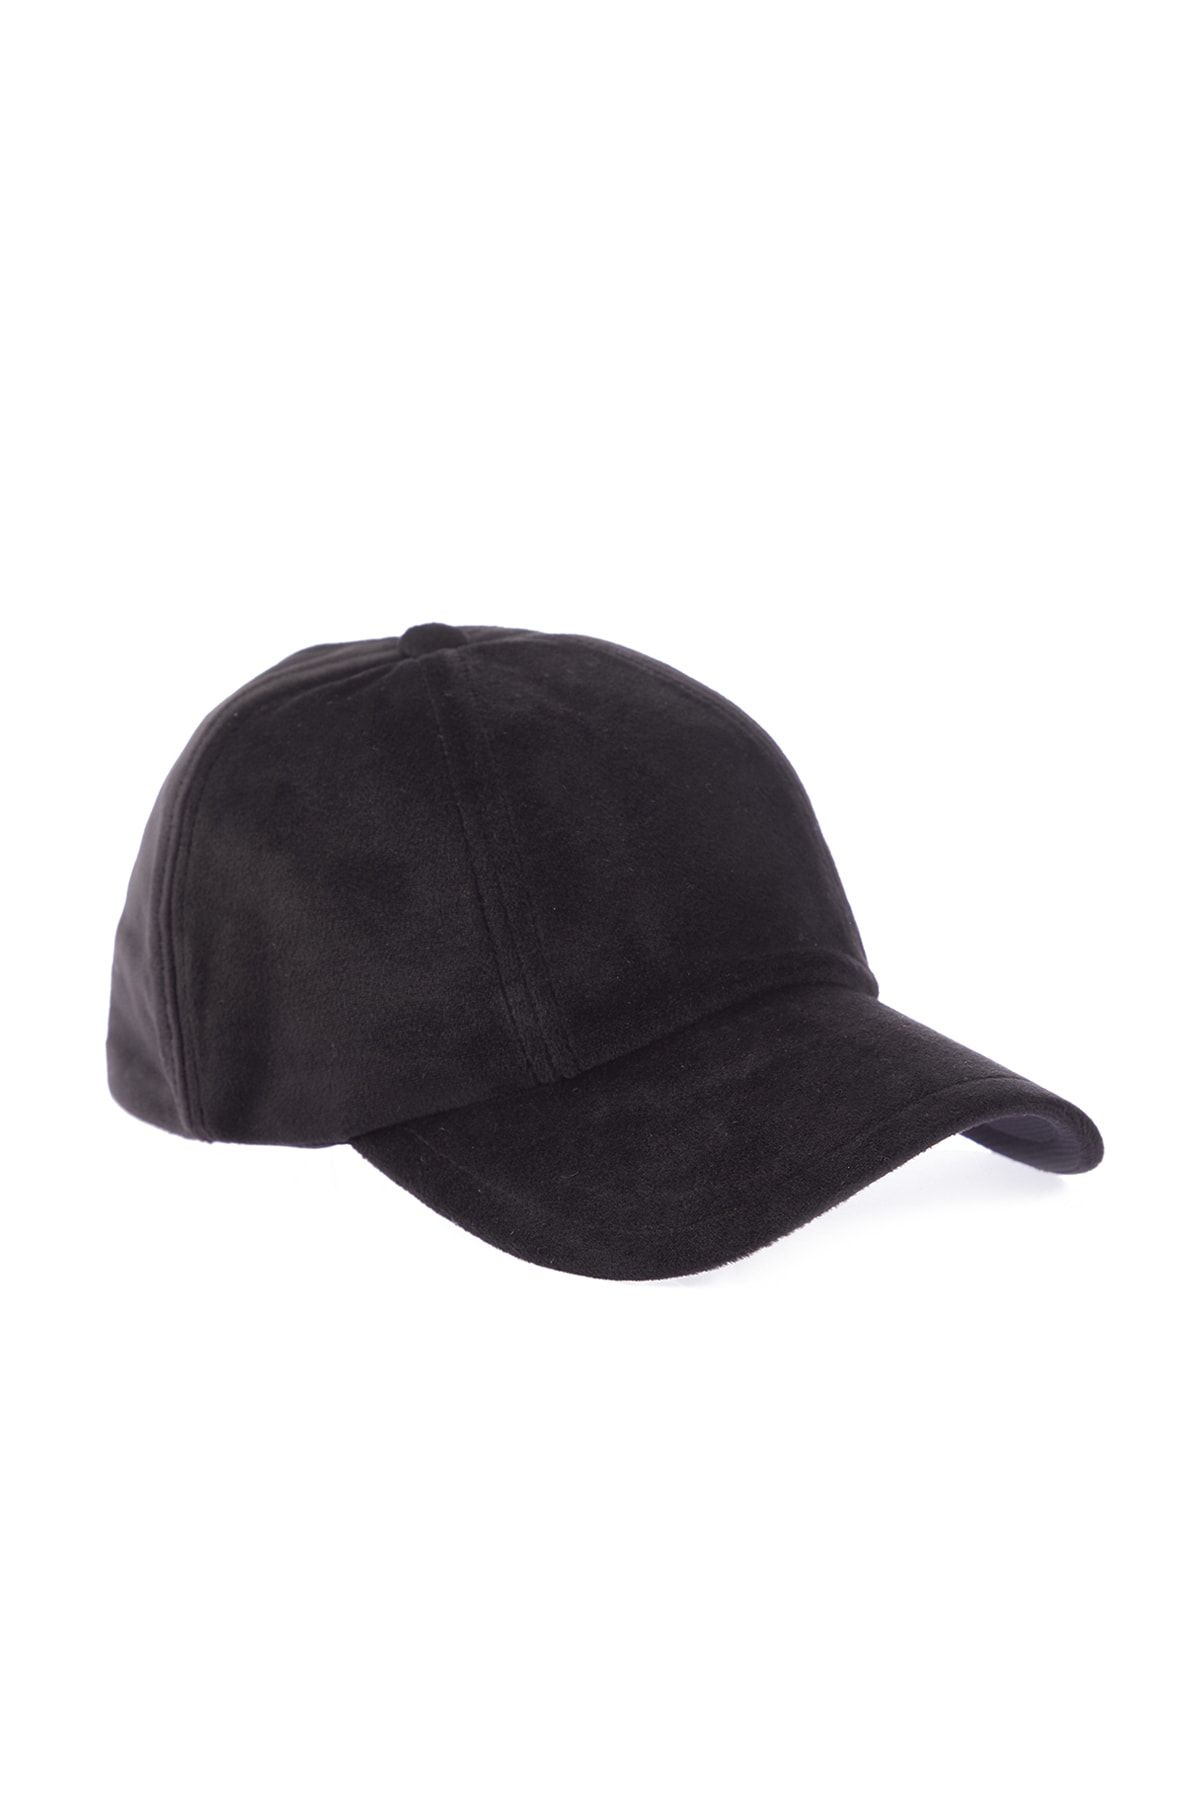 Puma PRIME Ponytail Cap - Siyah Detaylı Şapka